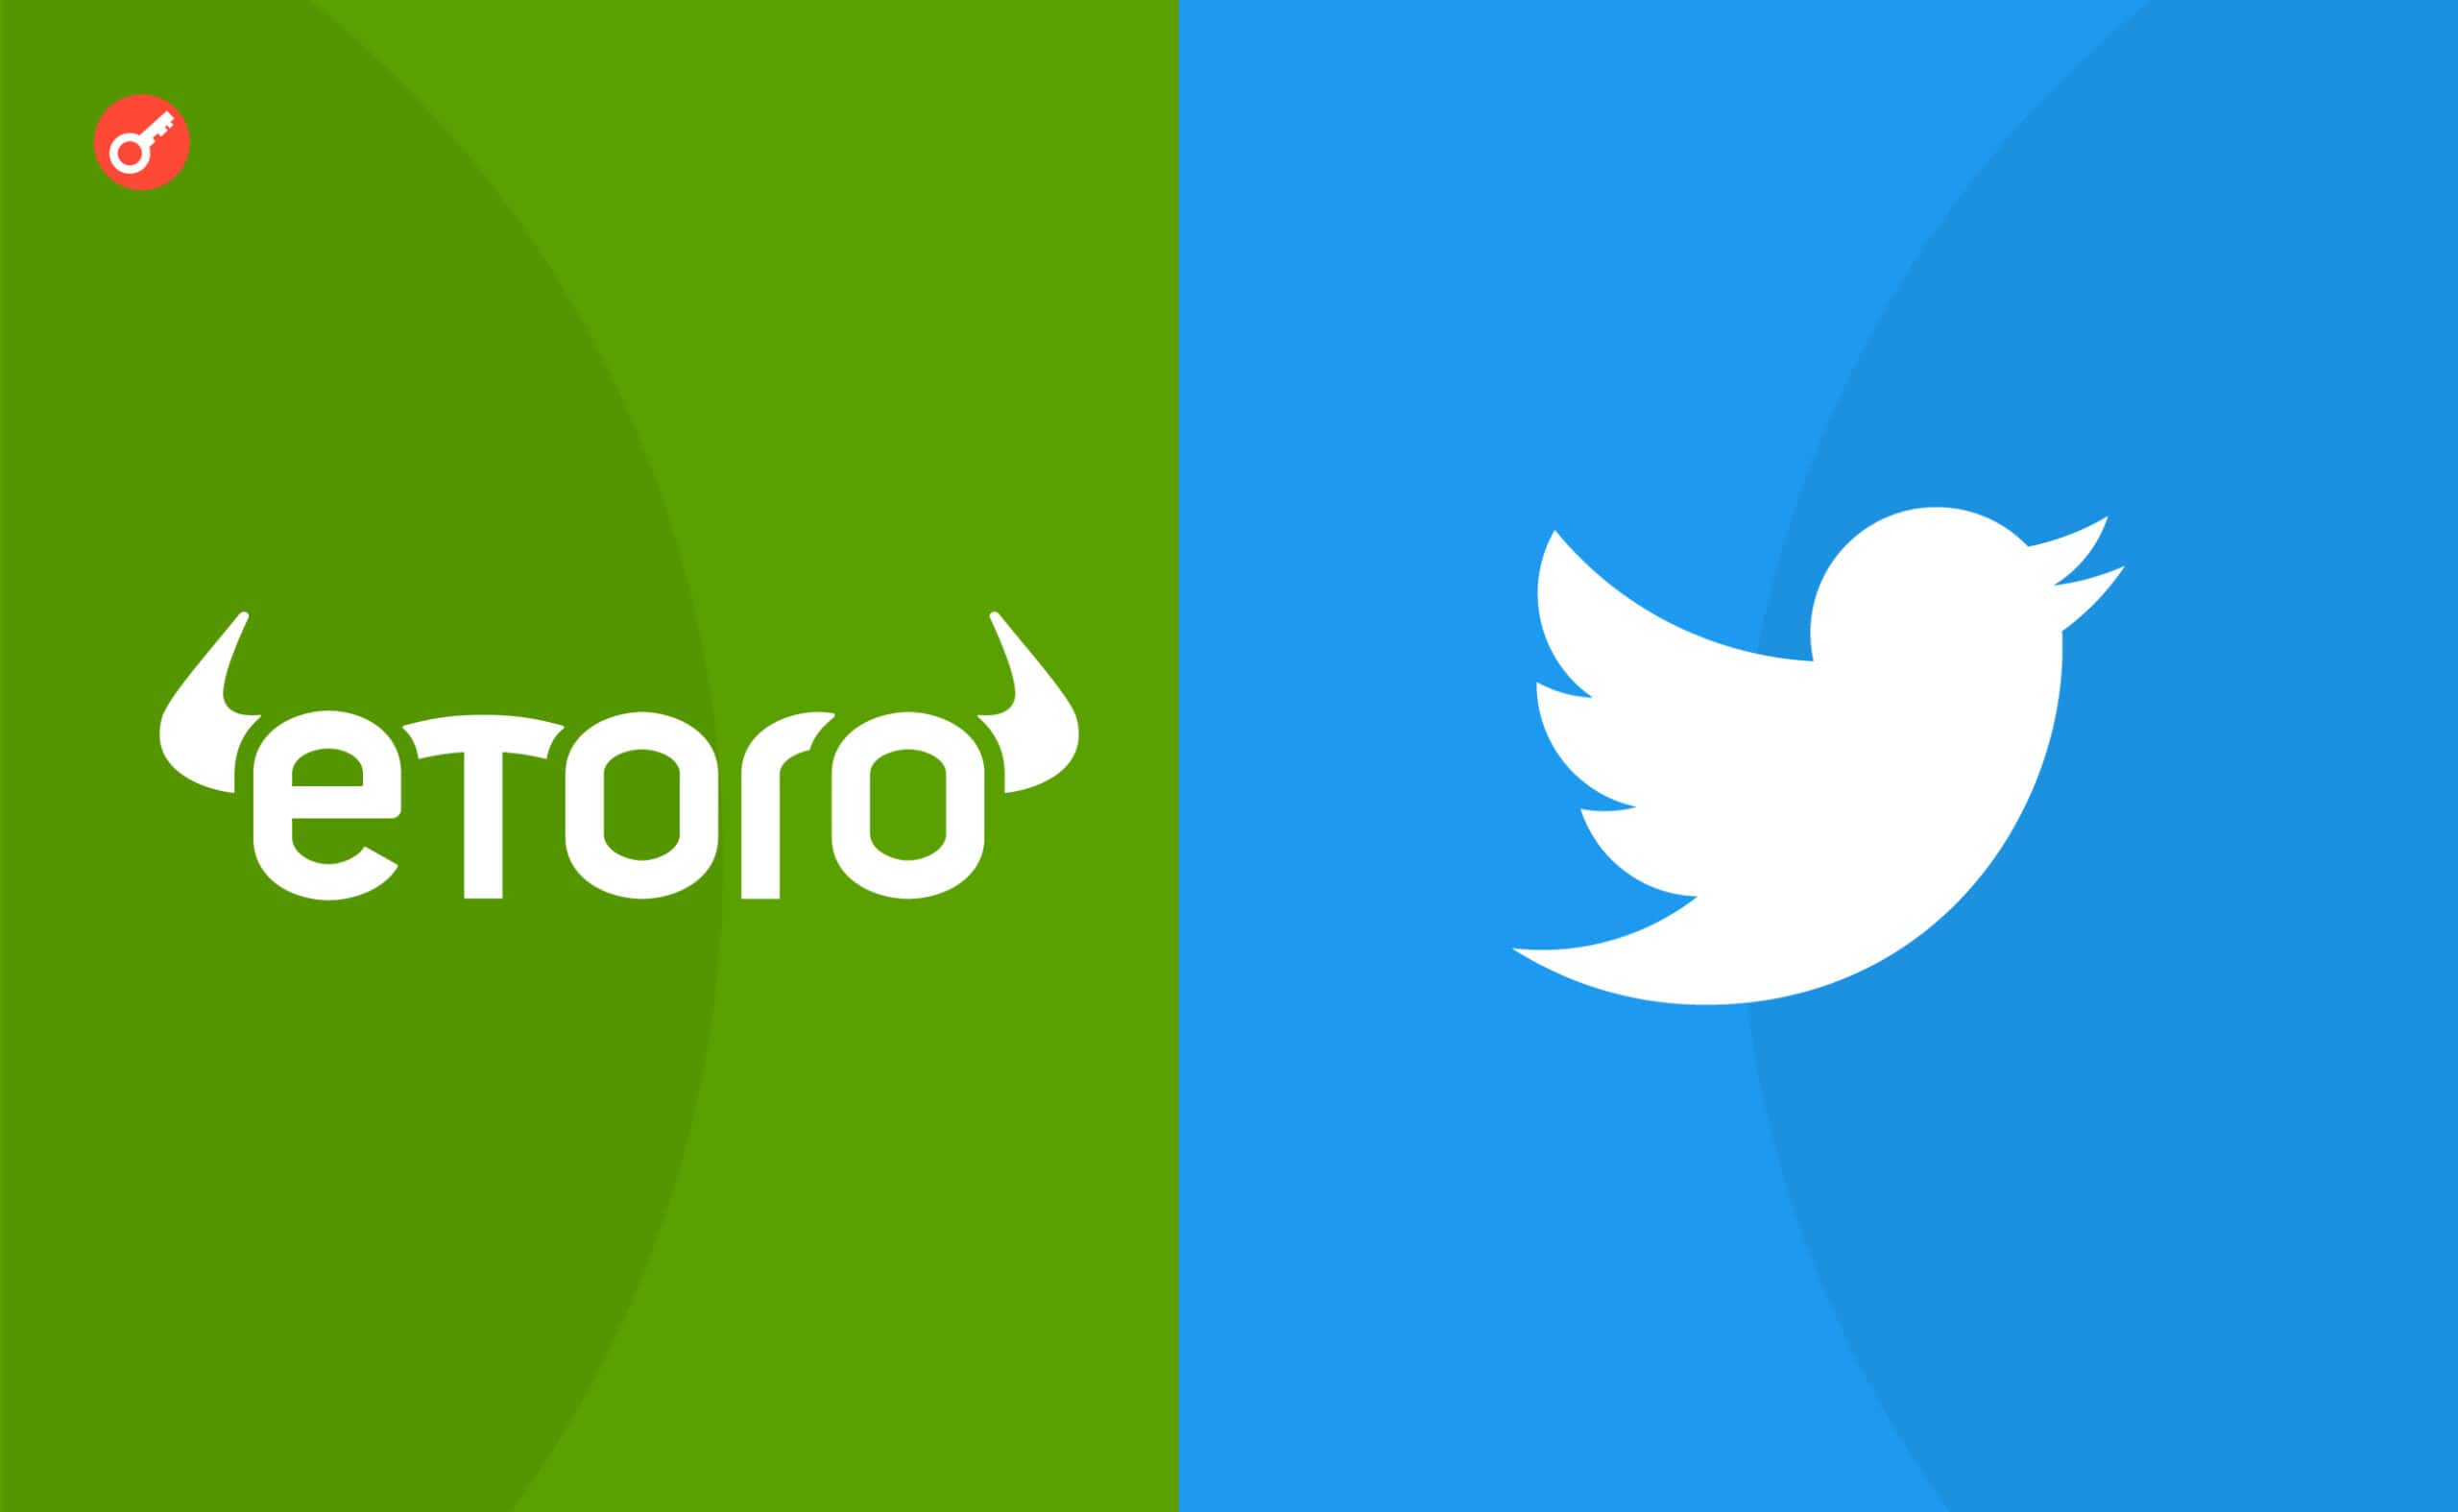 Twitter уклав партнерство з eToro. Користувачі платформи отримають можливість купувати криптовалюти та акції. Головний колаж новини.